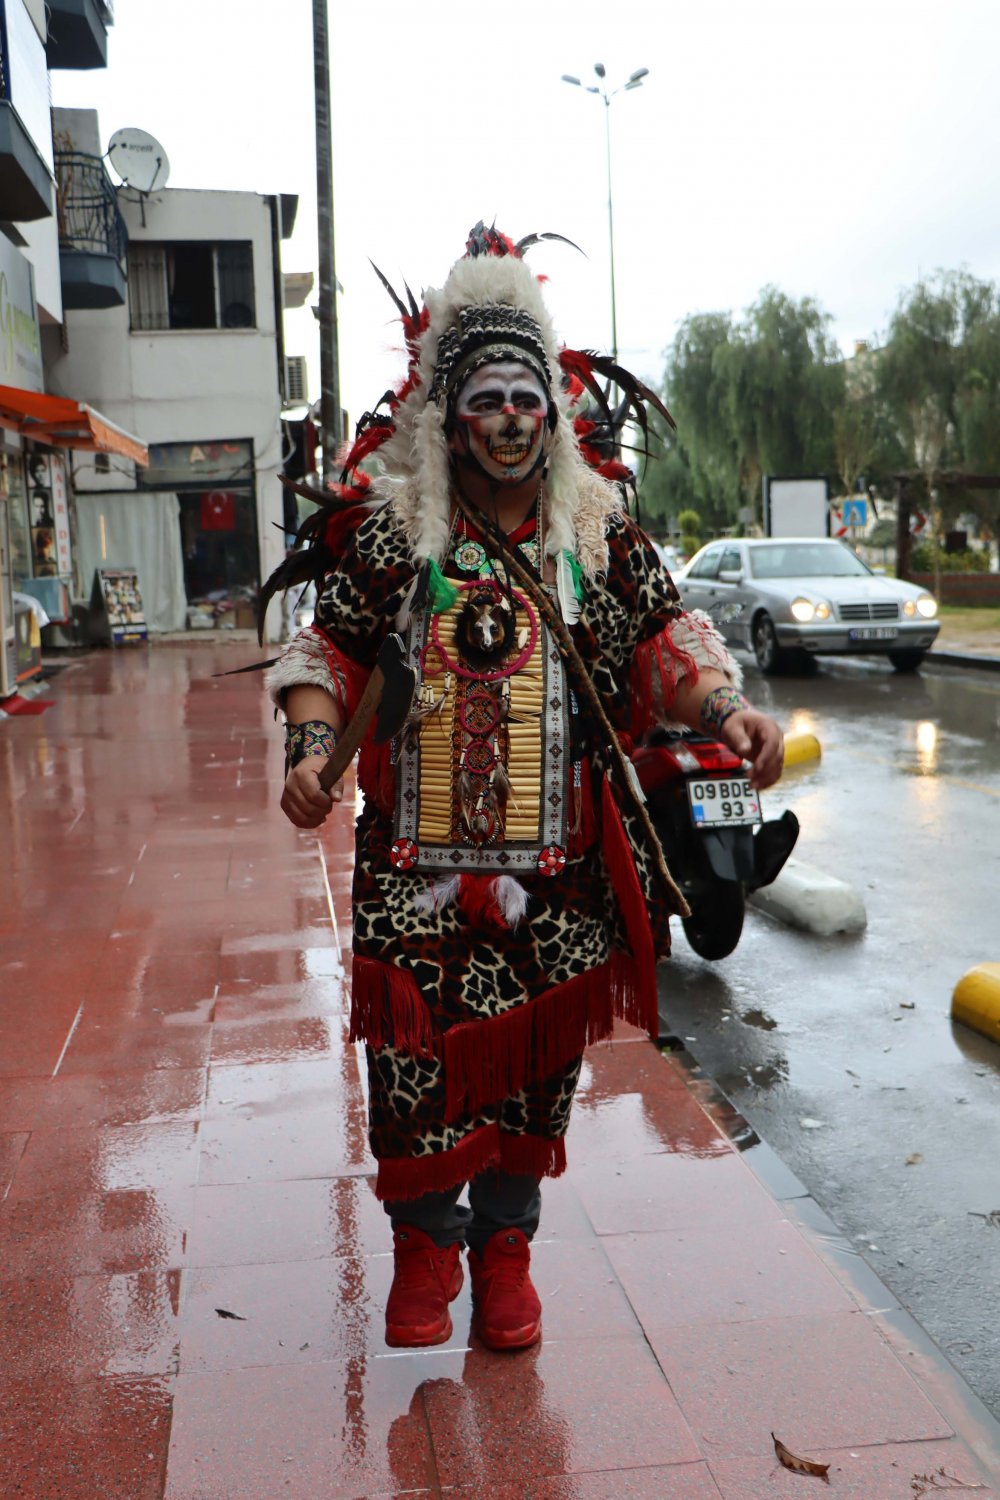 Denizlili 'yerli gezgin' kızılderili kıyafeti ile dünya turuna çıktı